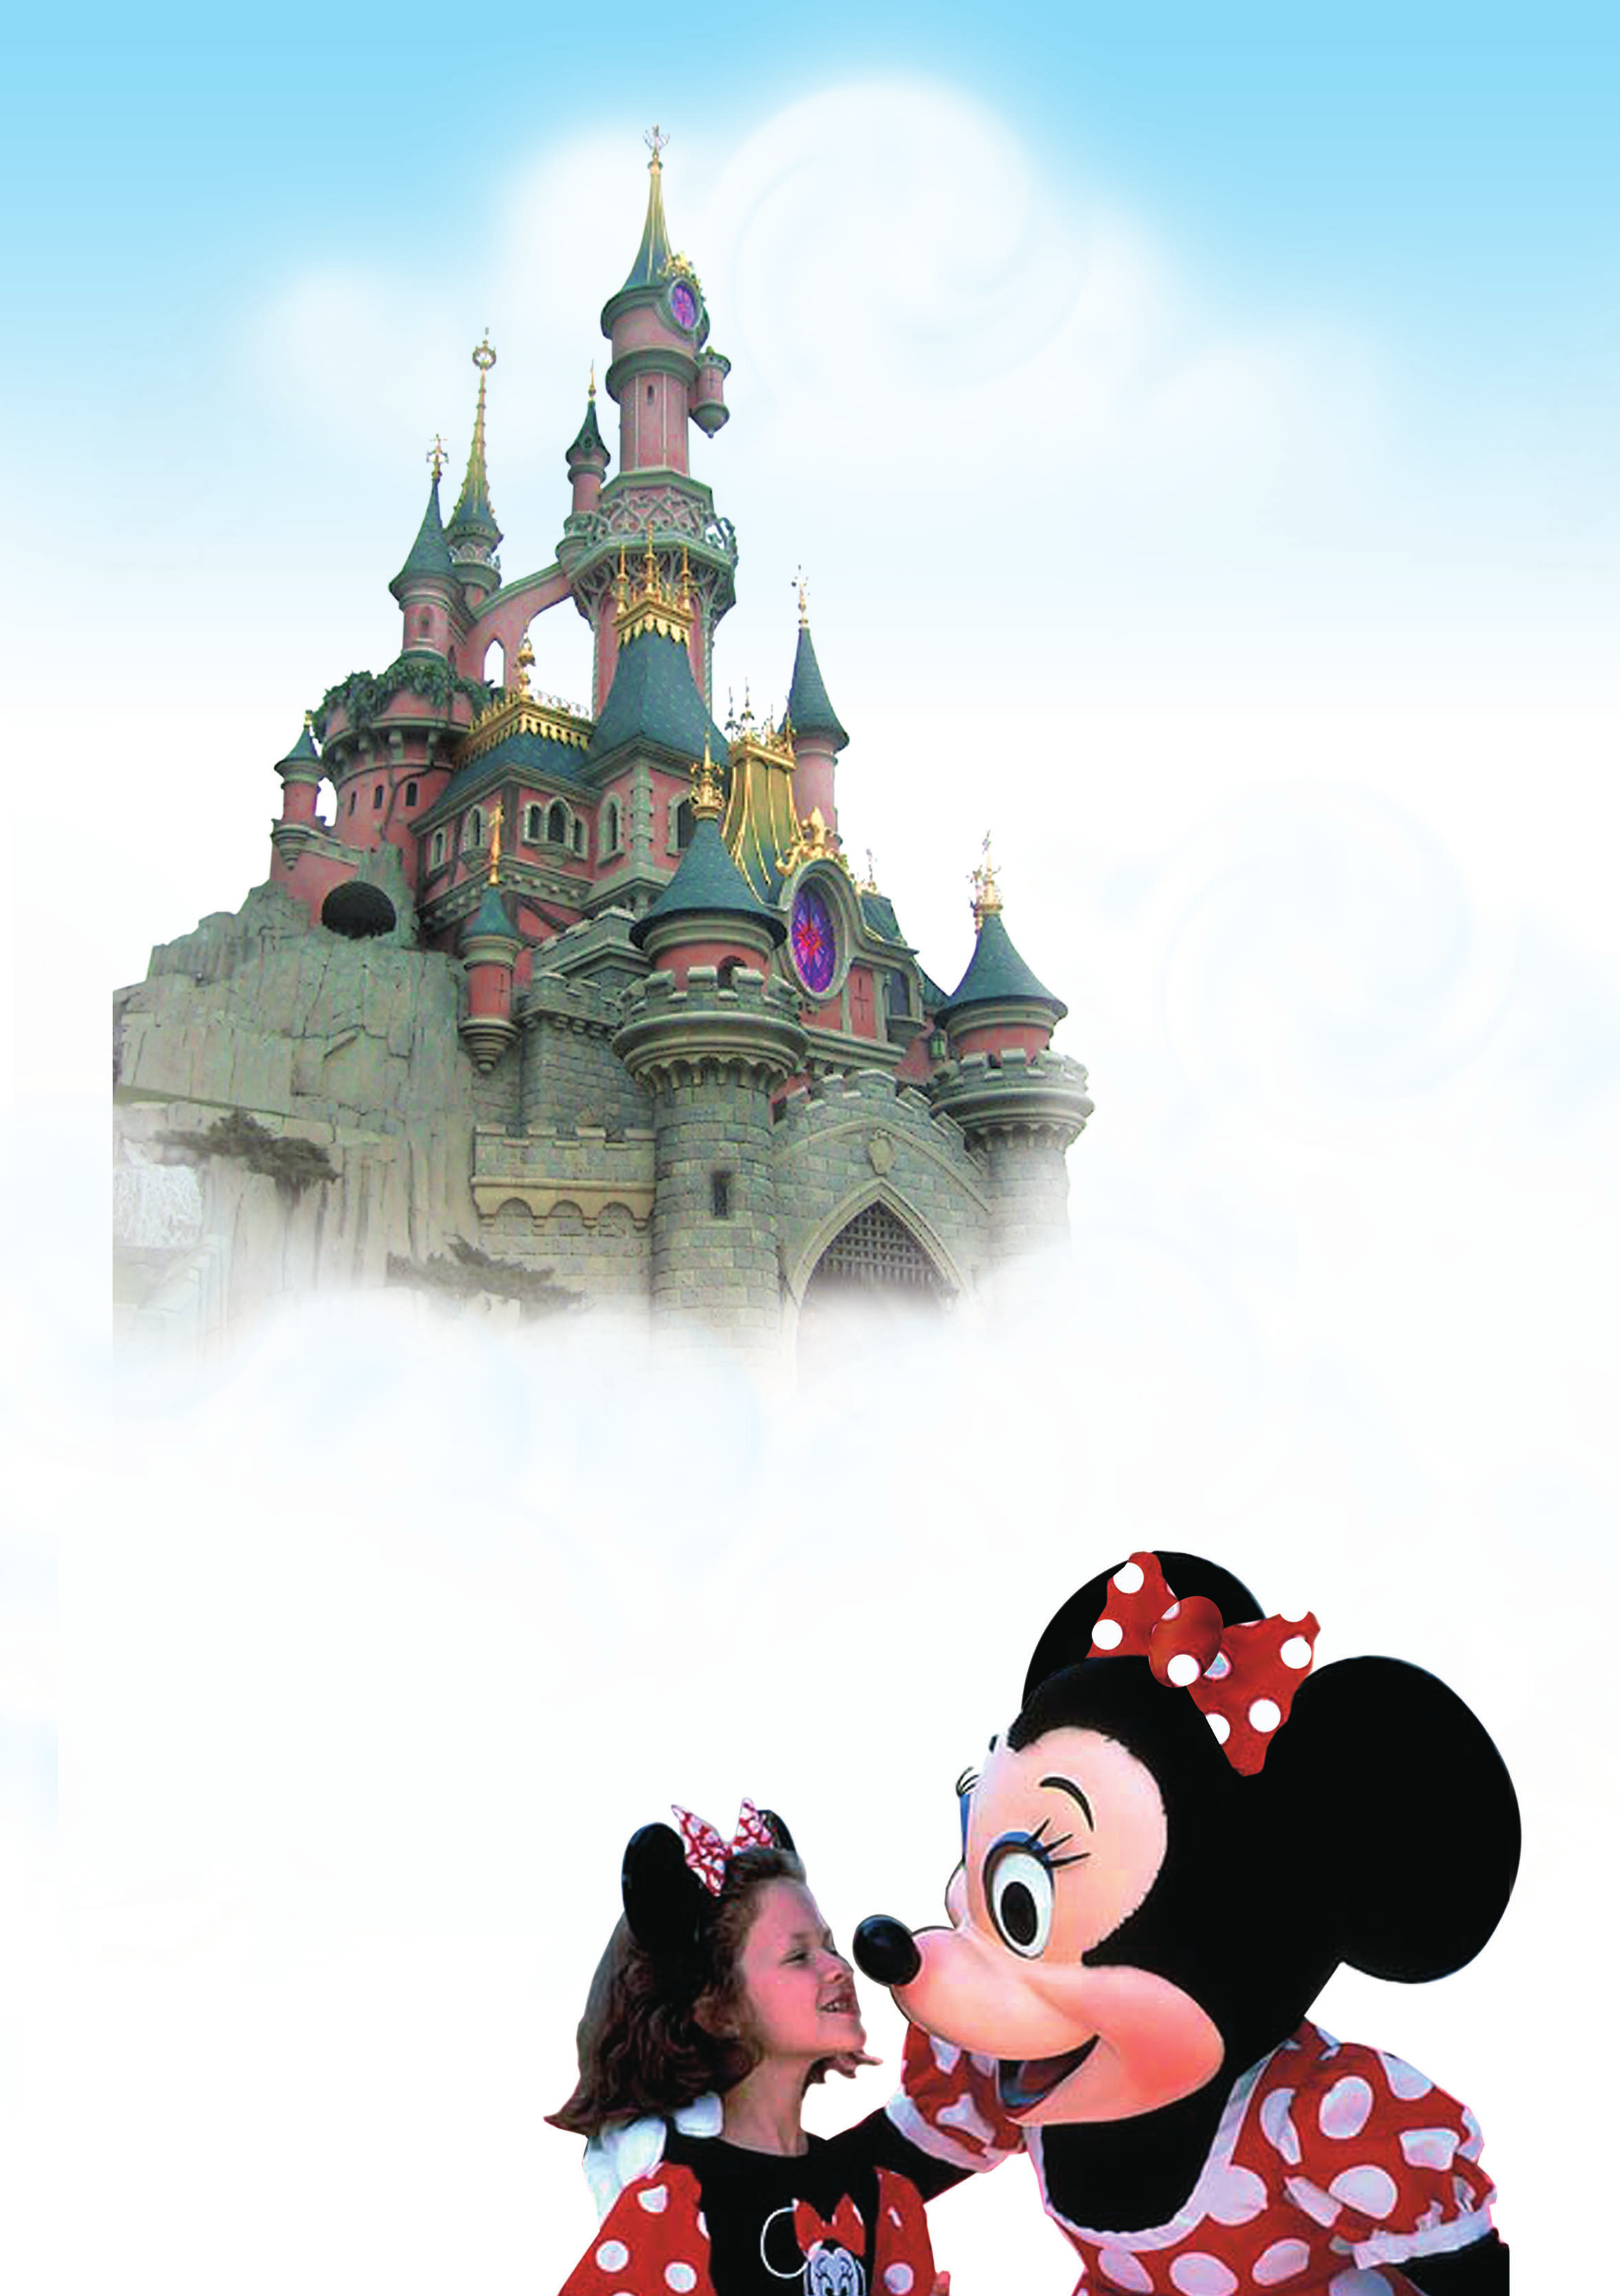 Gezelim - G örelim Disneyland Rüyalarýn þehri Paris, çocuklar için vazgeçilmezdir. Paris e 45 dakika uzaklýktaki kocaman bir þehir olan Euro Disneyland (Yuro Disneyland) gerçek bir masal ülkesi.